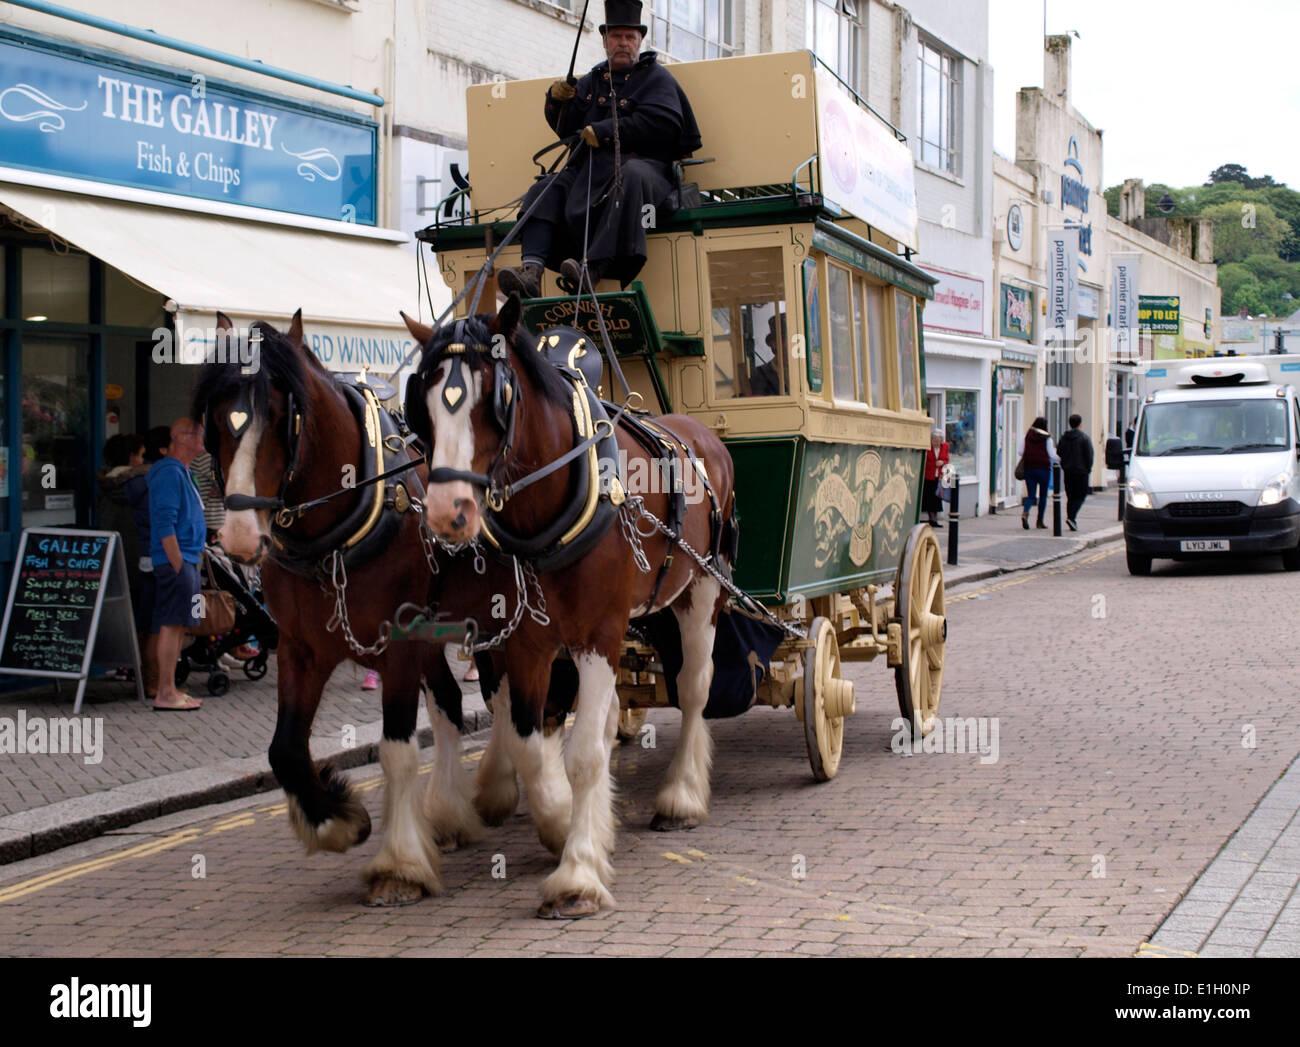 Paseo en carruaje tirado por caballos tours de la ciudad de Truro, Cornwall, Reino Unido Foto de stock